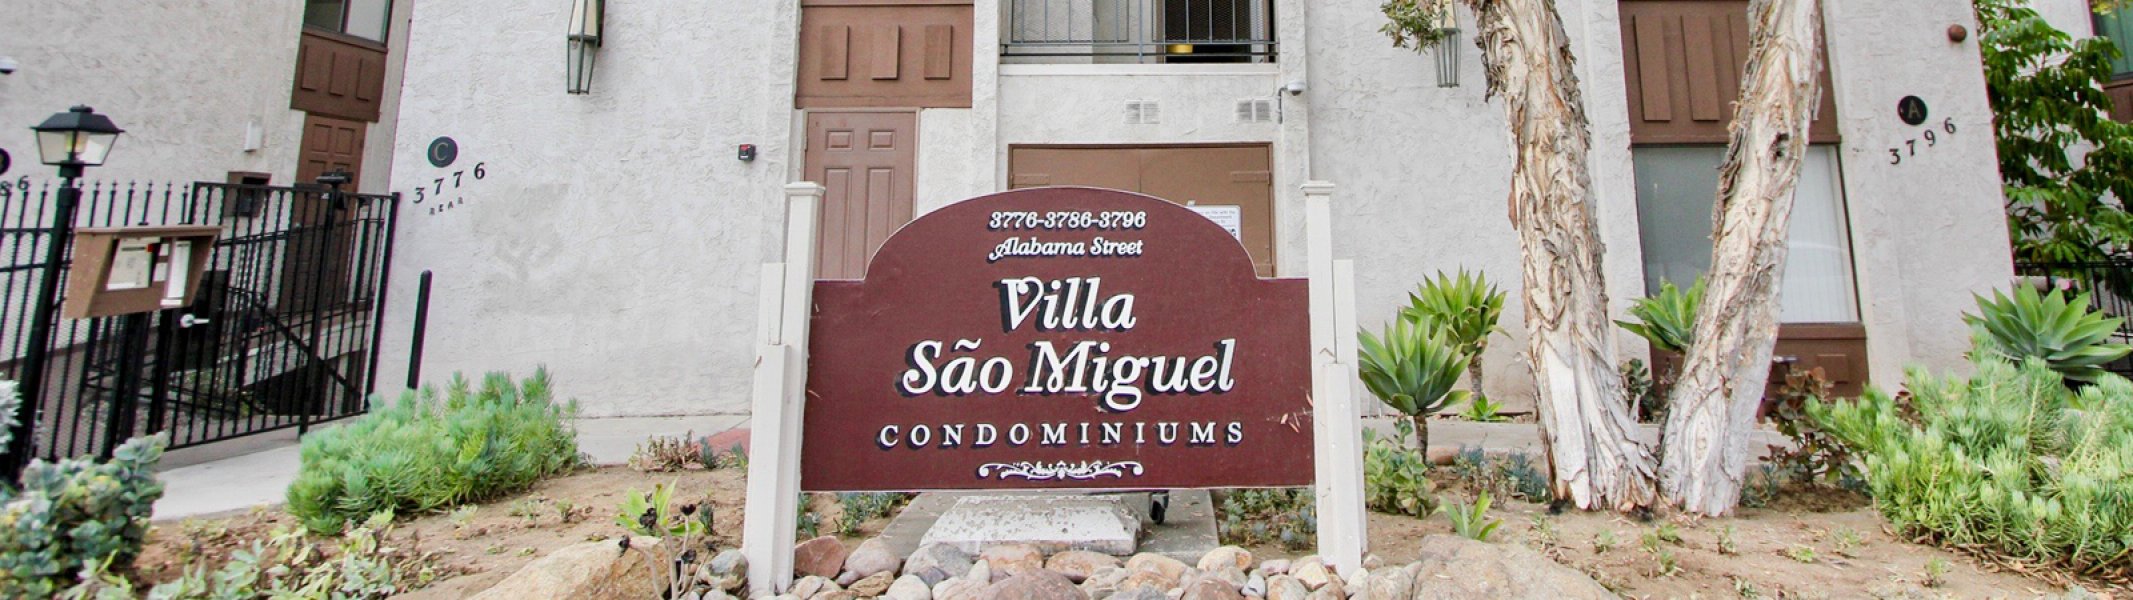 Villa Sao Miguel